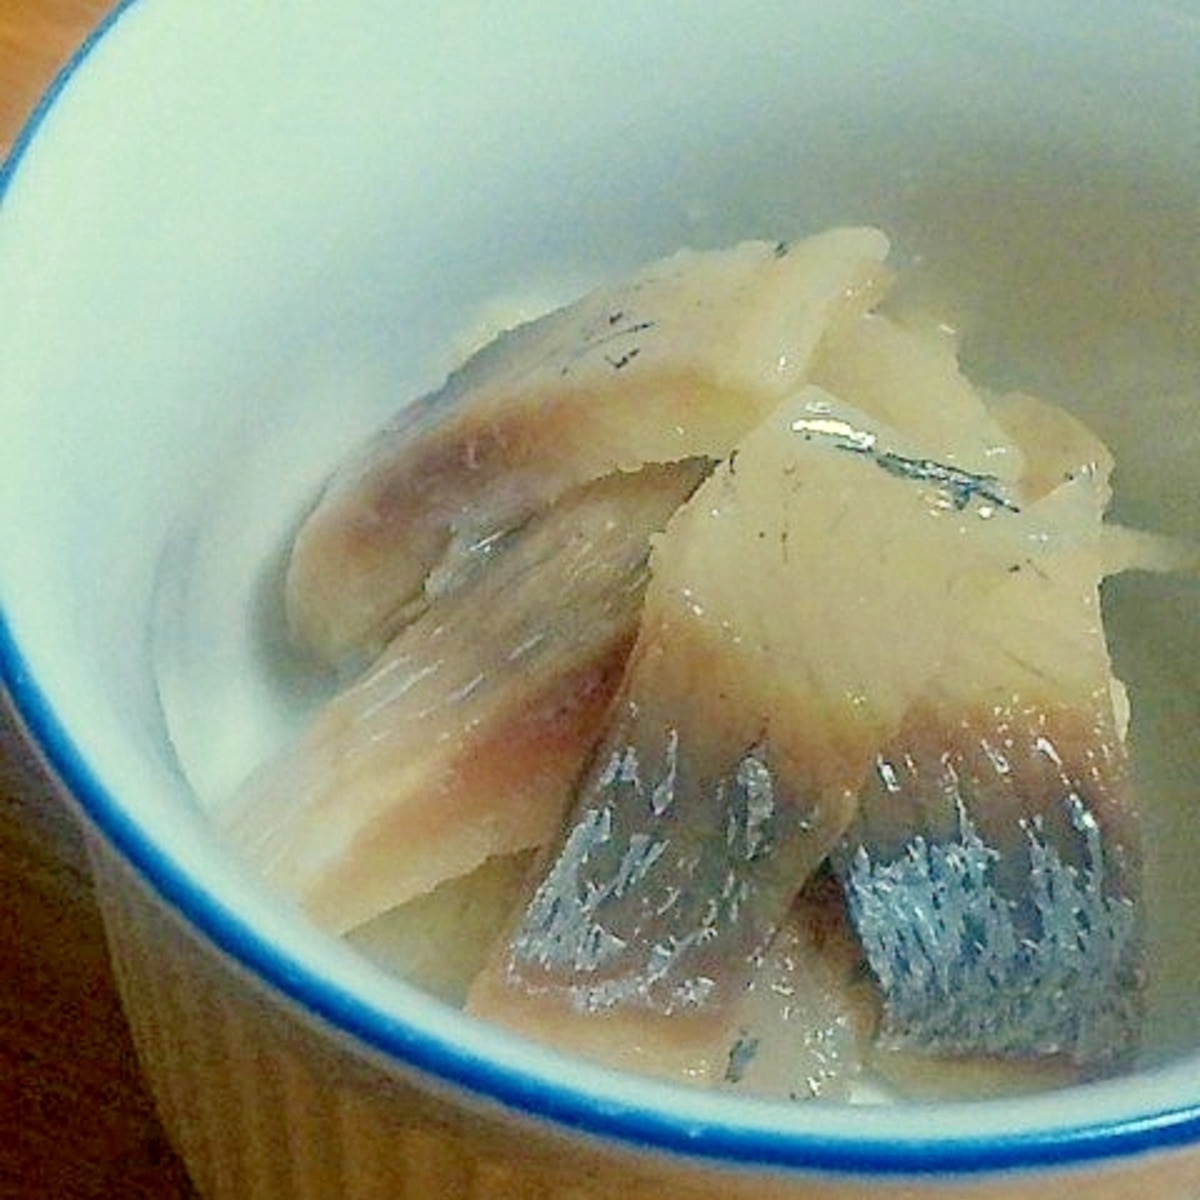 釣り魚 コノシロの酢漬け レシピ 作り方 By ゆみぽぽぽぽーん 楽天レシピ